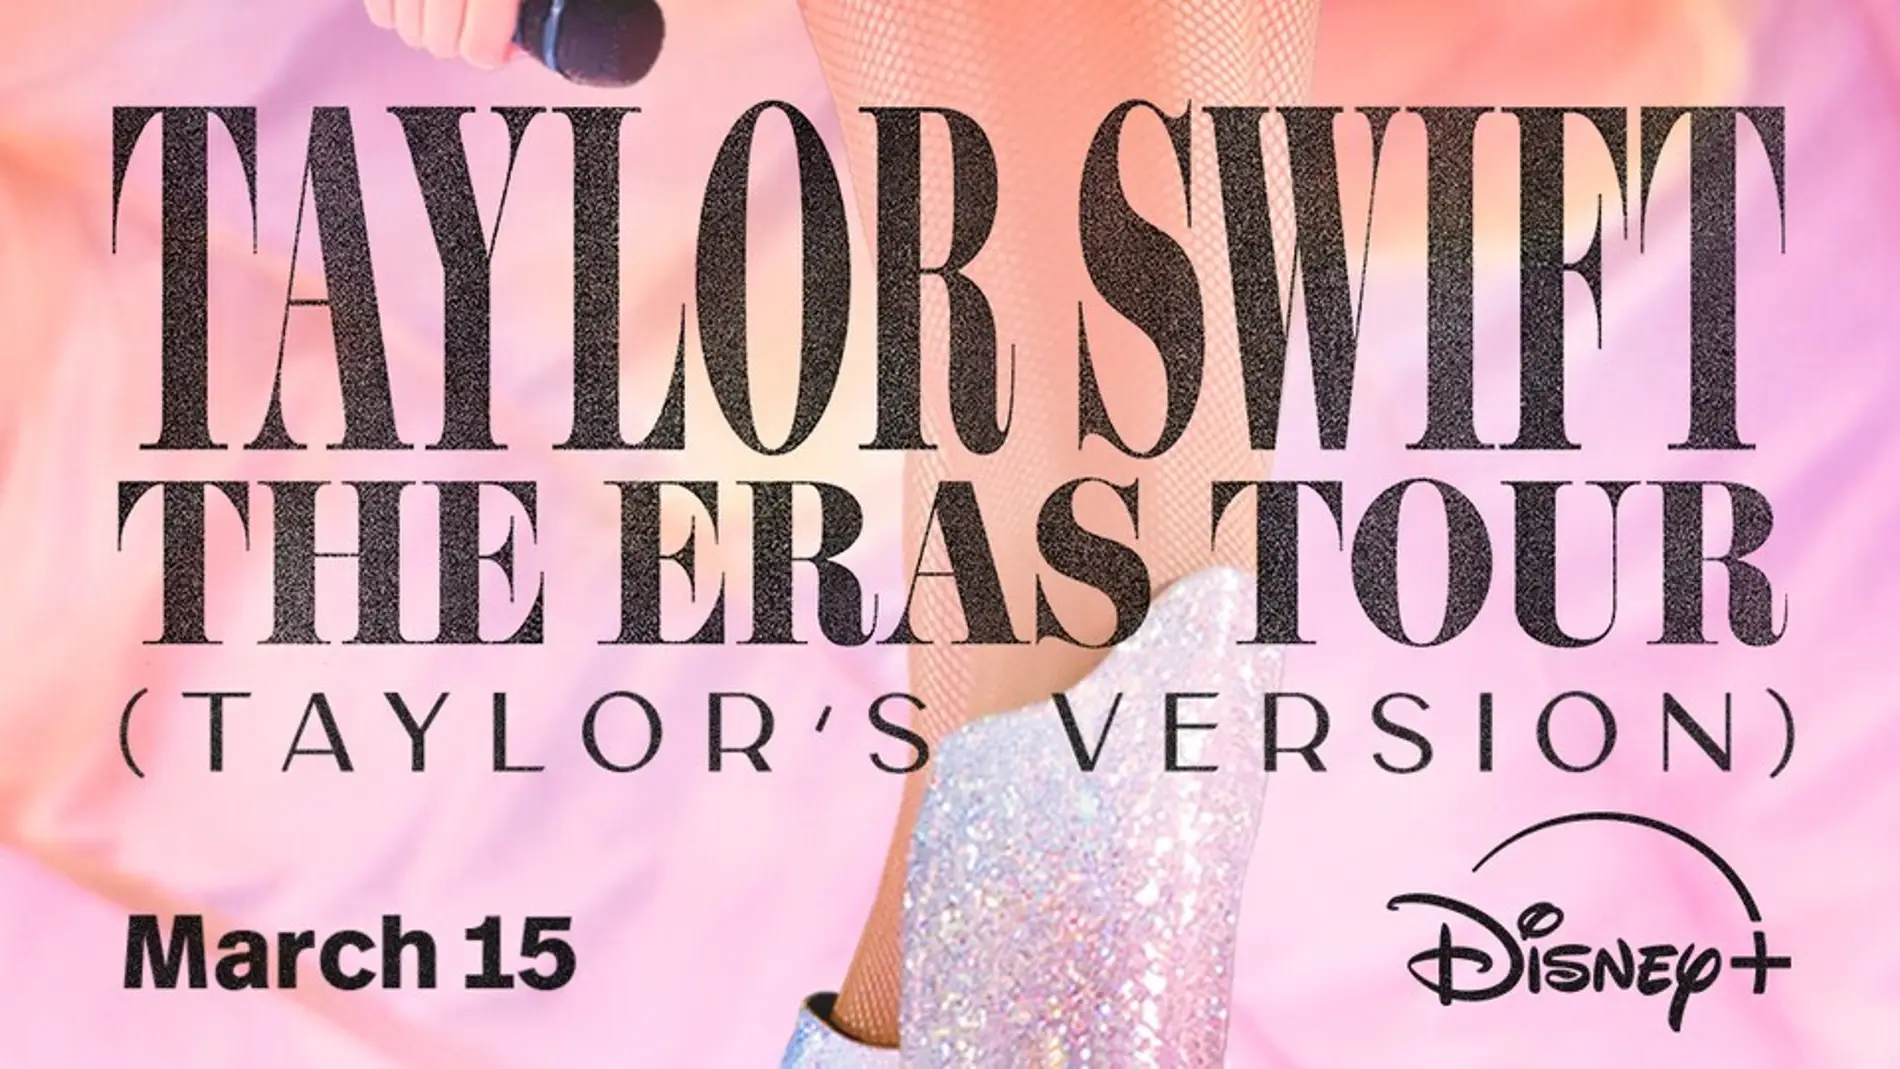 Taylor Swift The Eras Tour (Taylor’s Version)